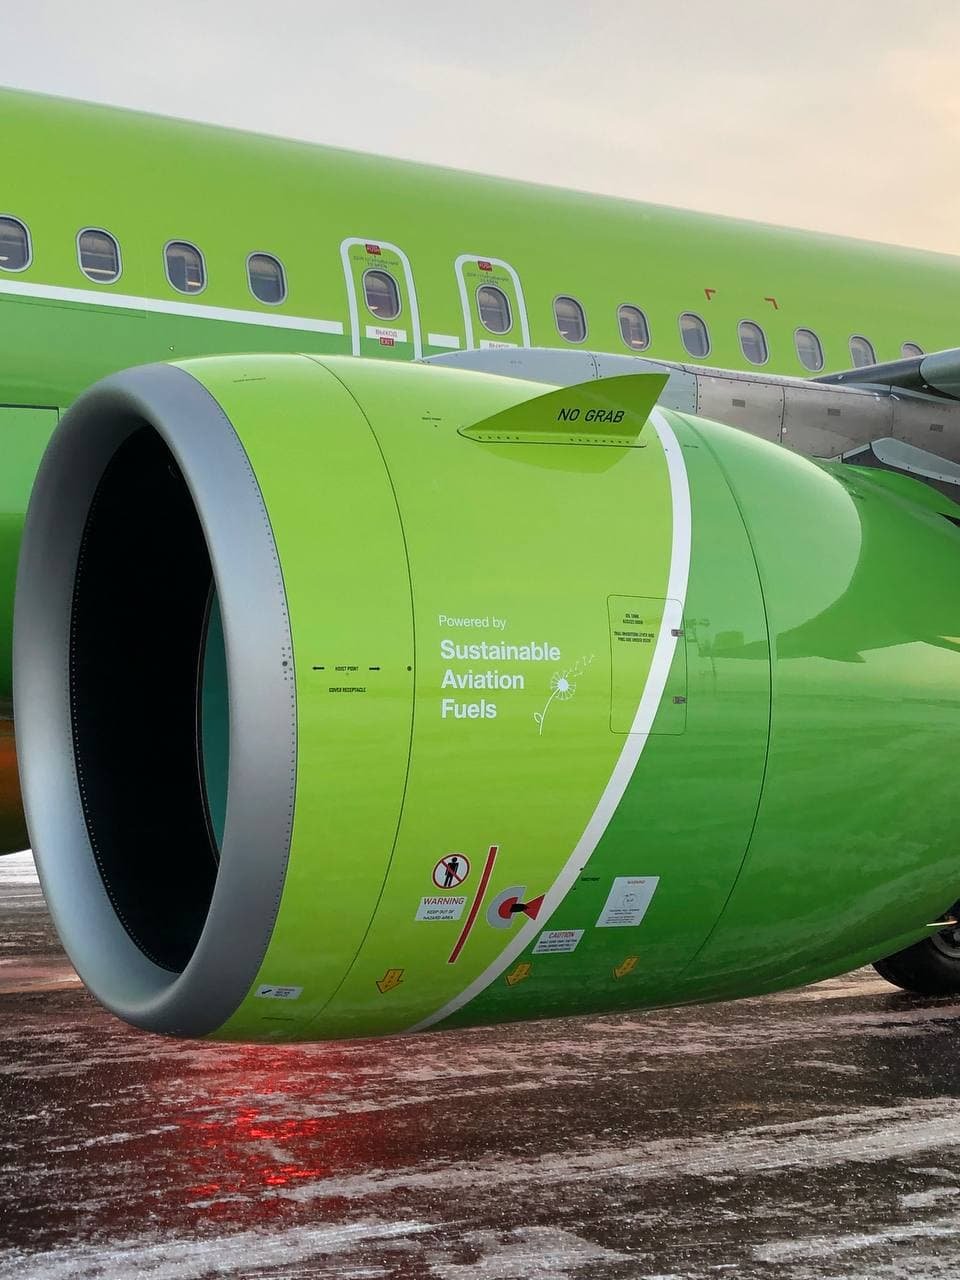 S7 Airlines первой из российских авиакомпаний выполнила полет на биотопливе